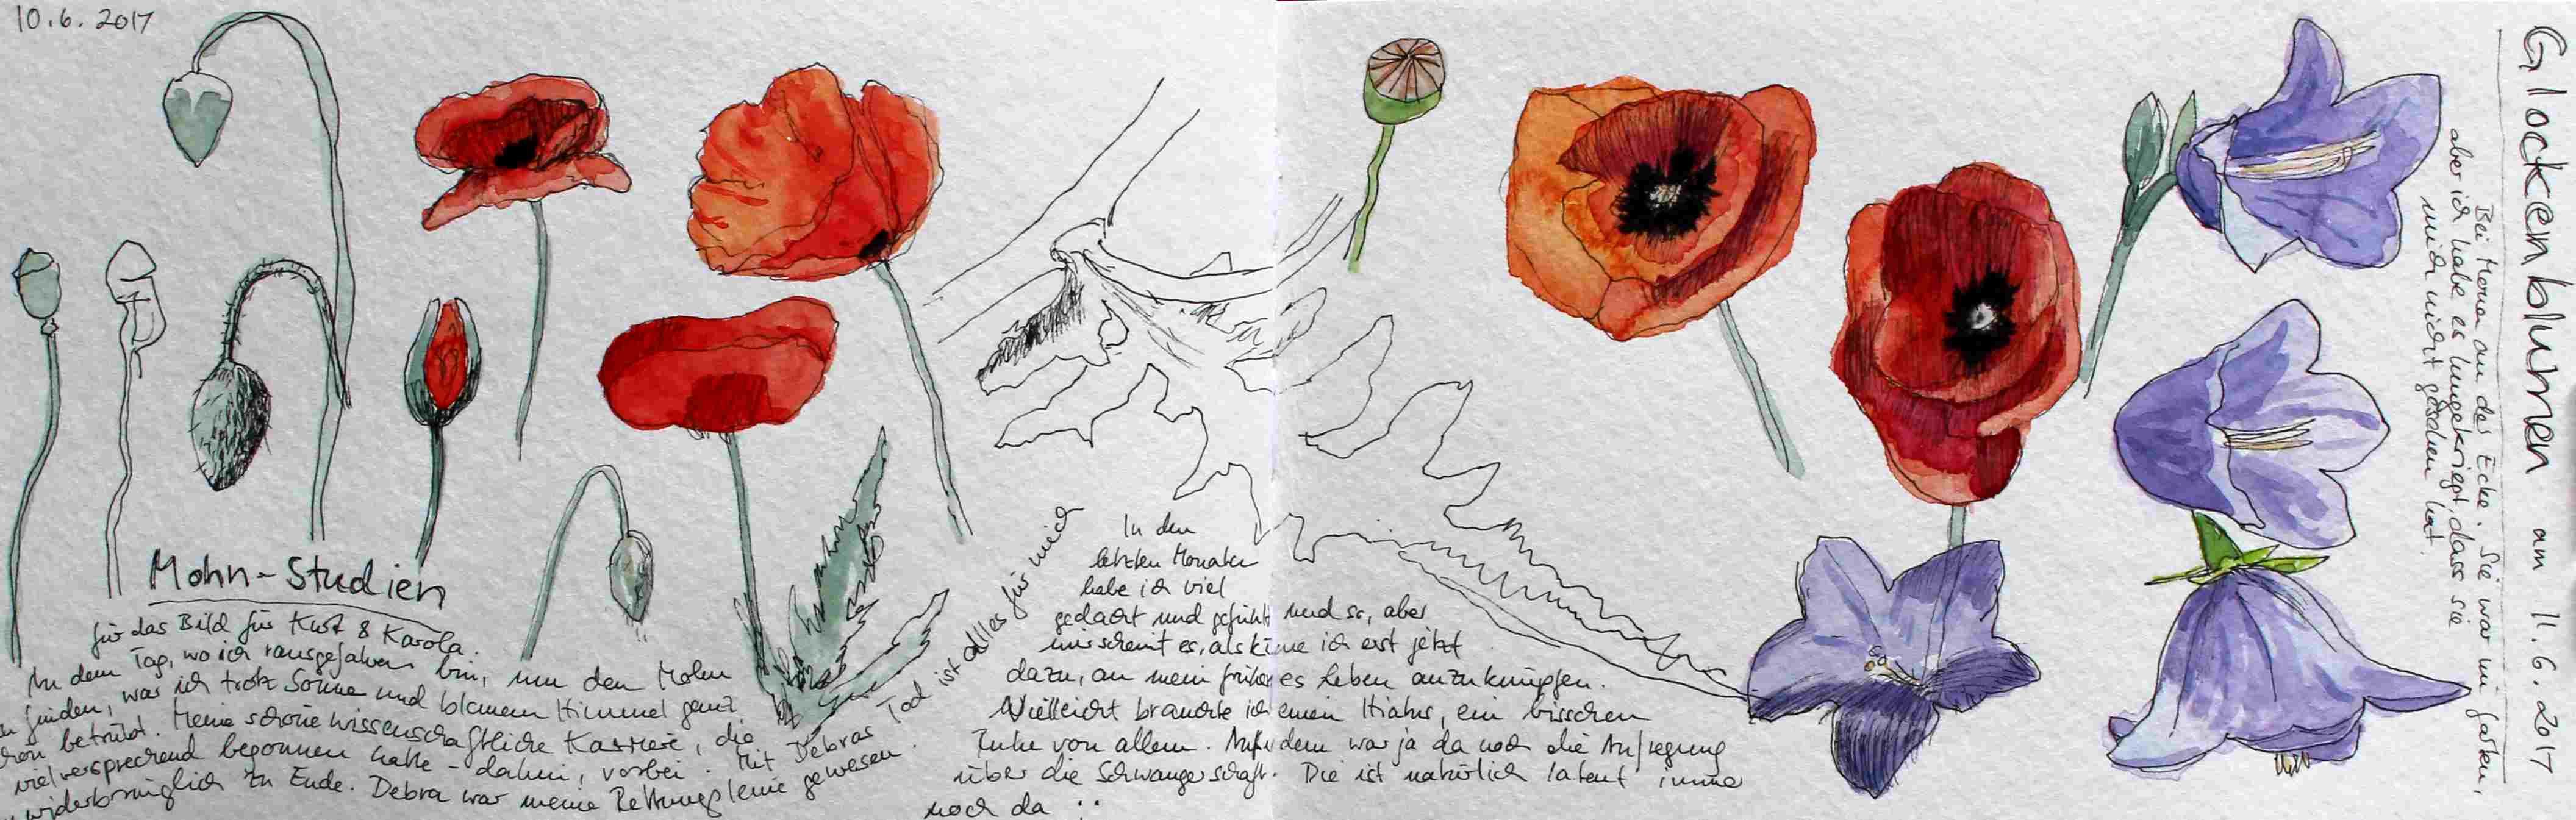 Flower sketches | Blumenskizzen